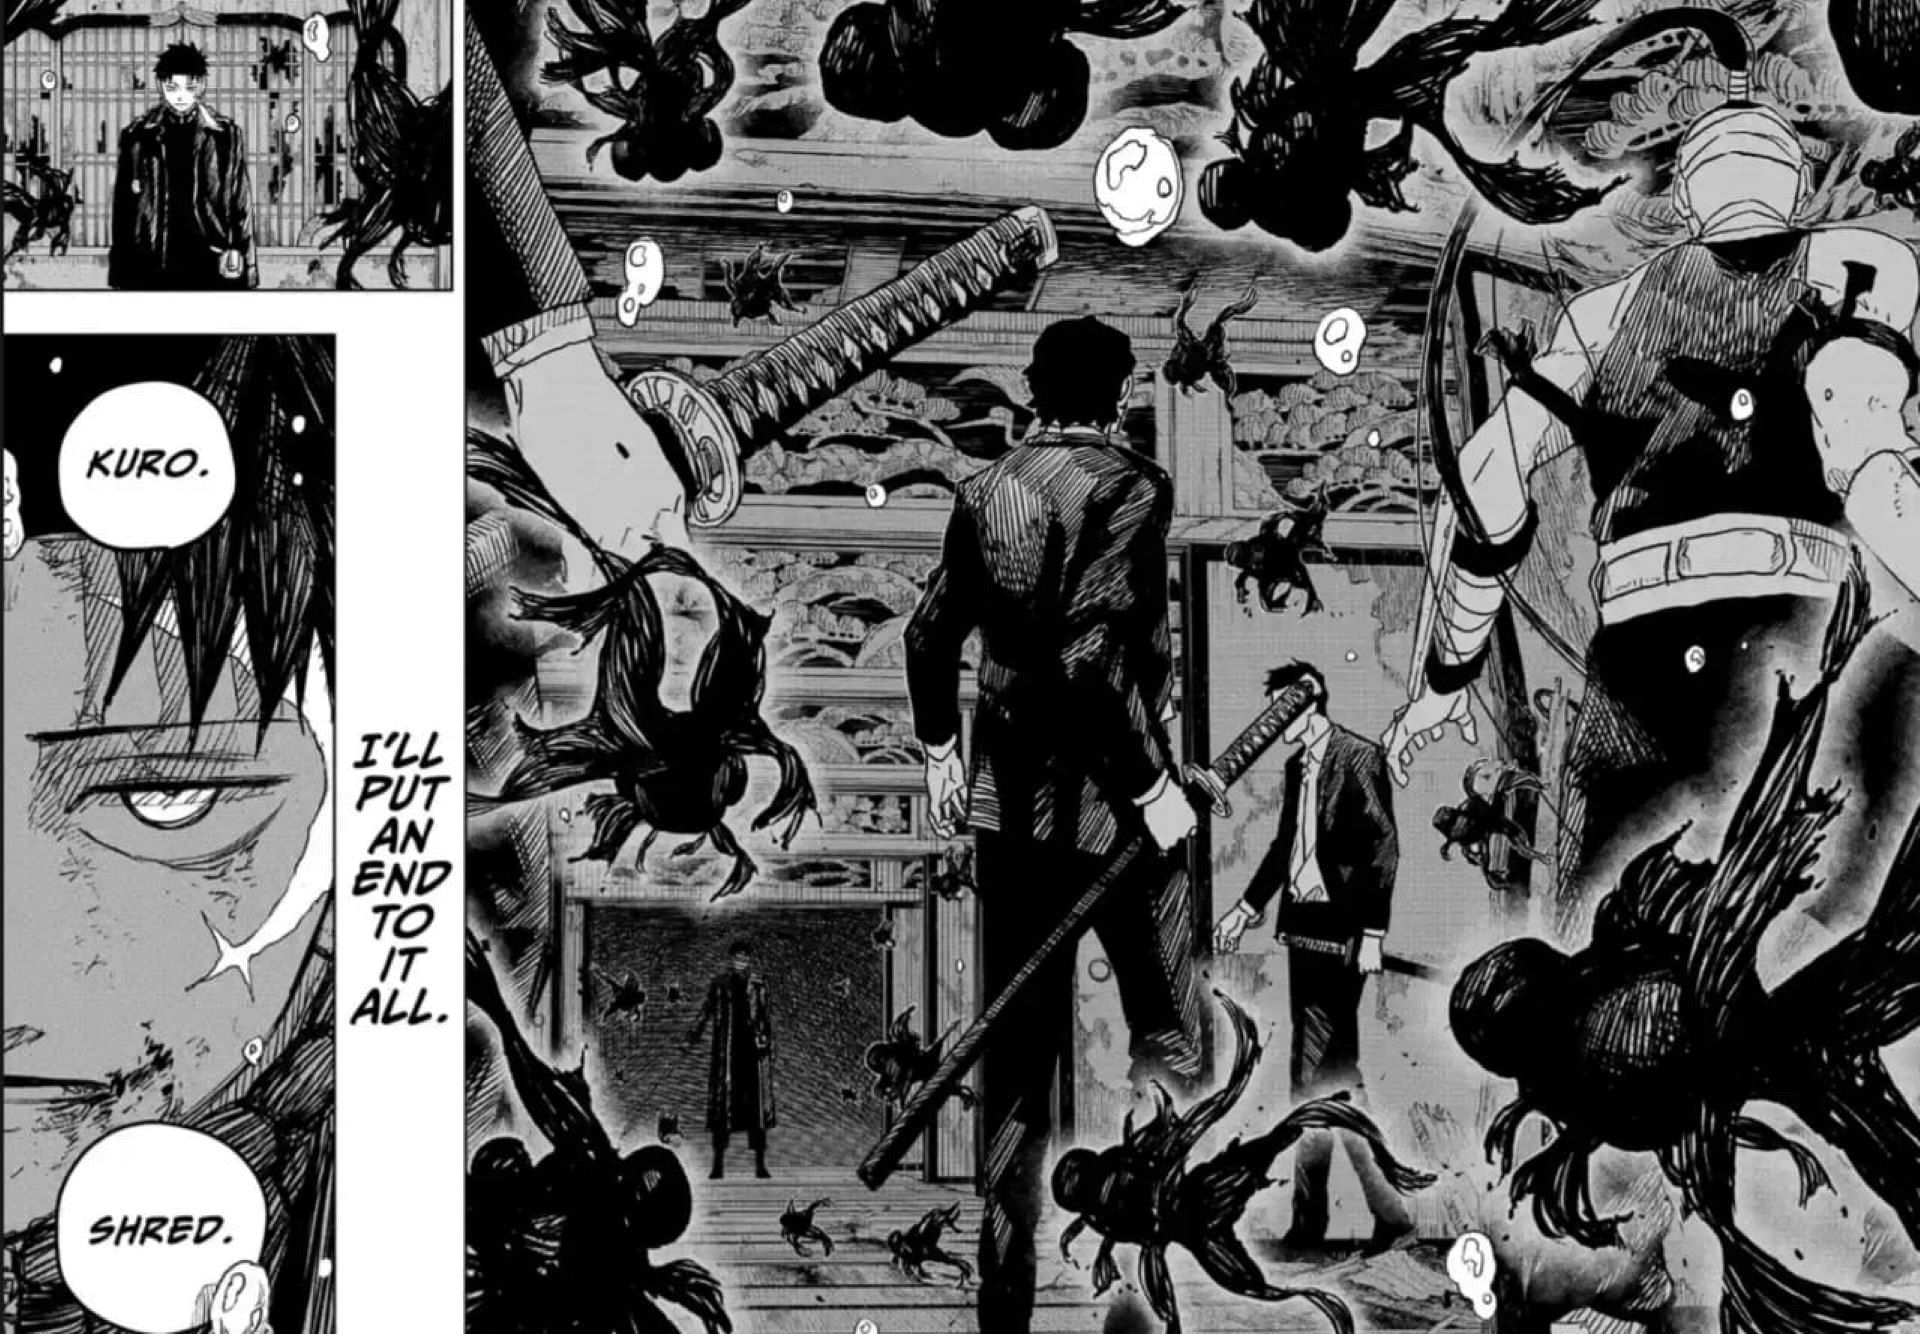 Chihiro using Kuro in the manga (Image via Takeru Hokazono/Shueisha)